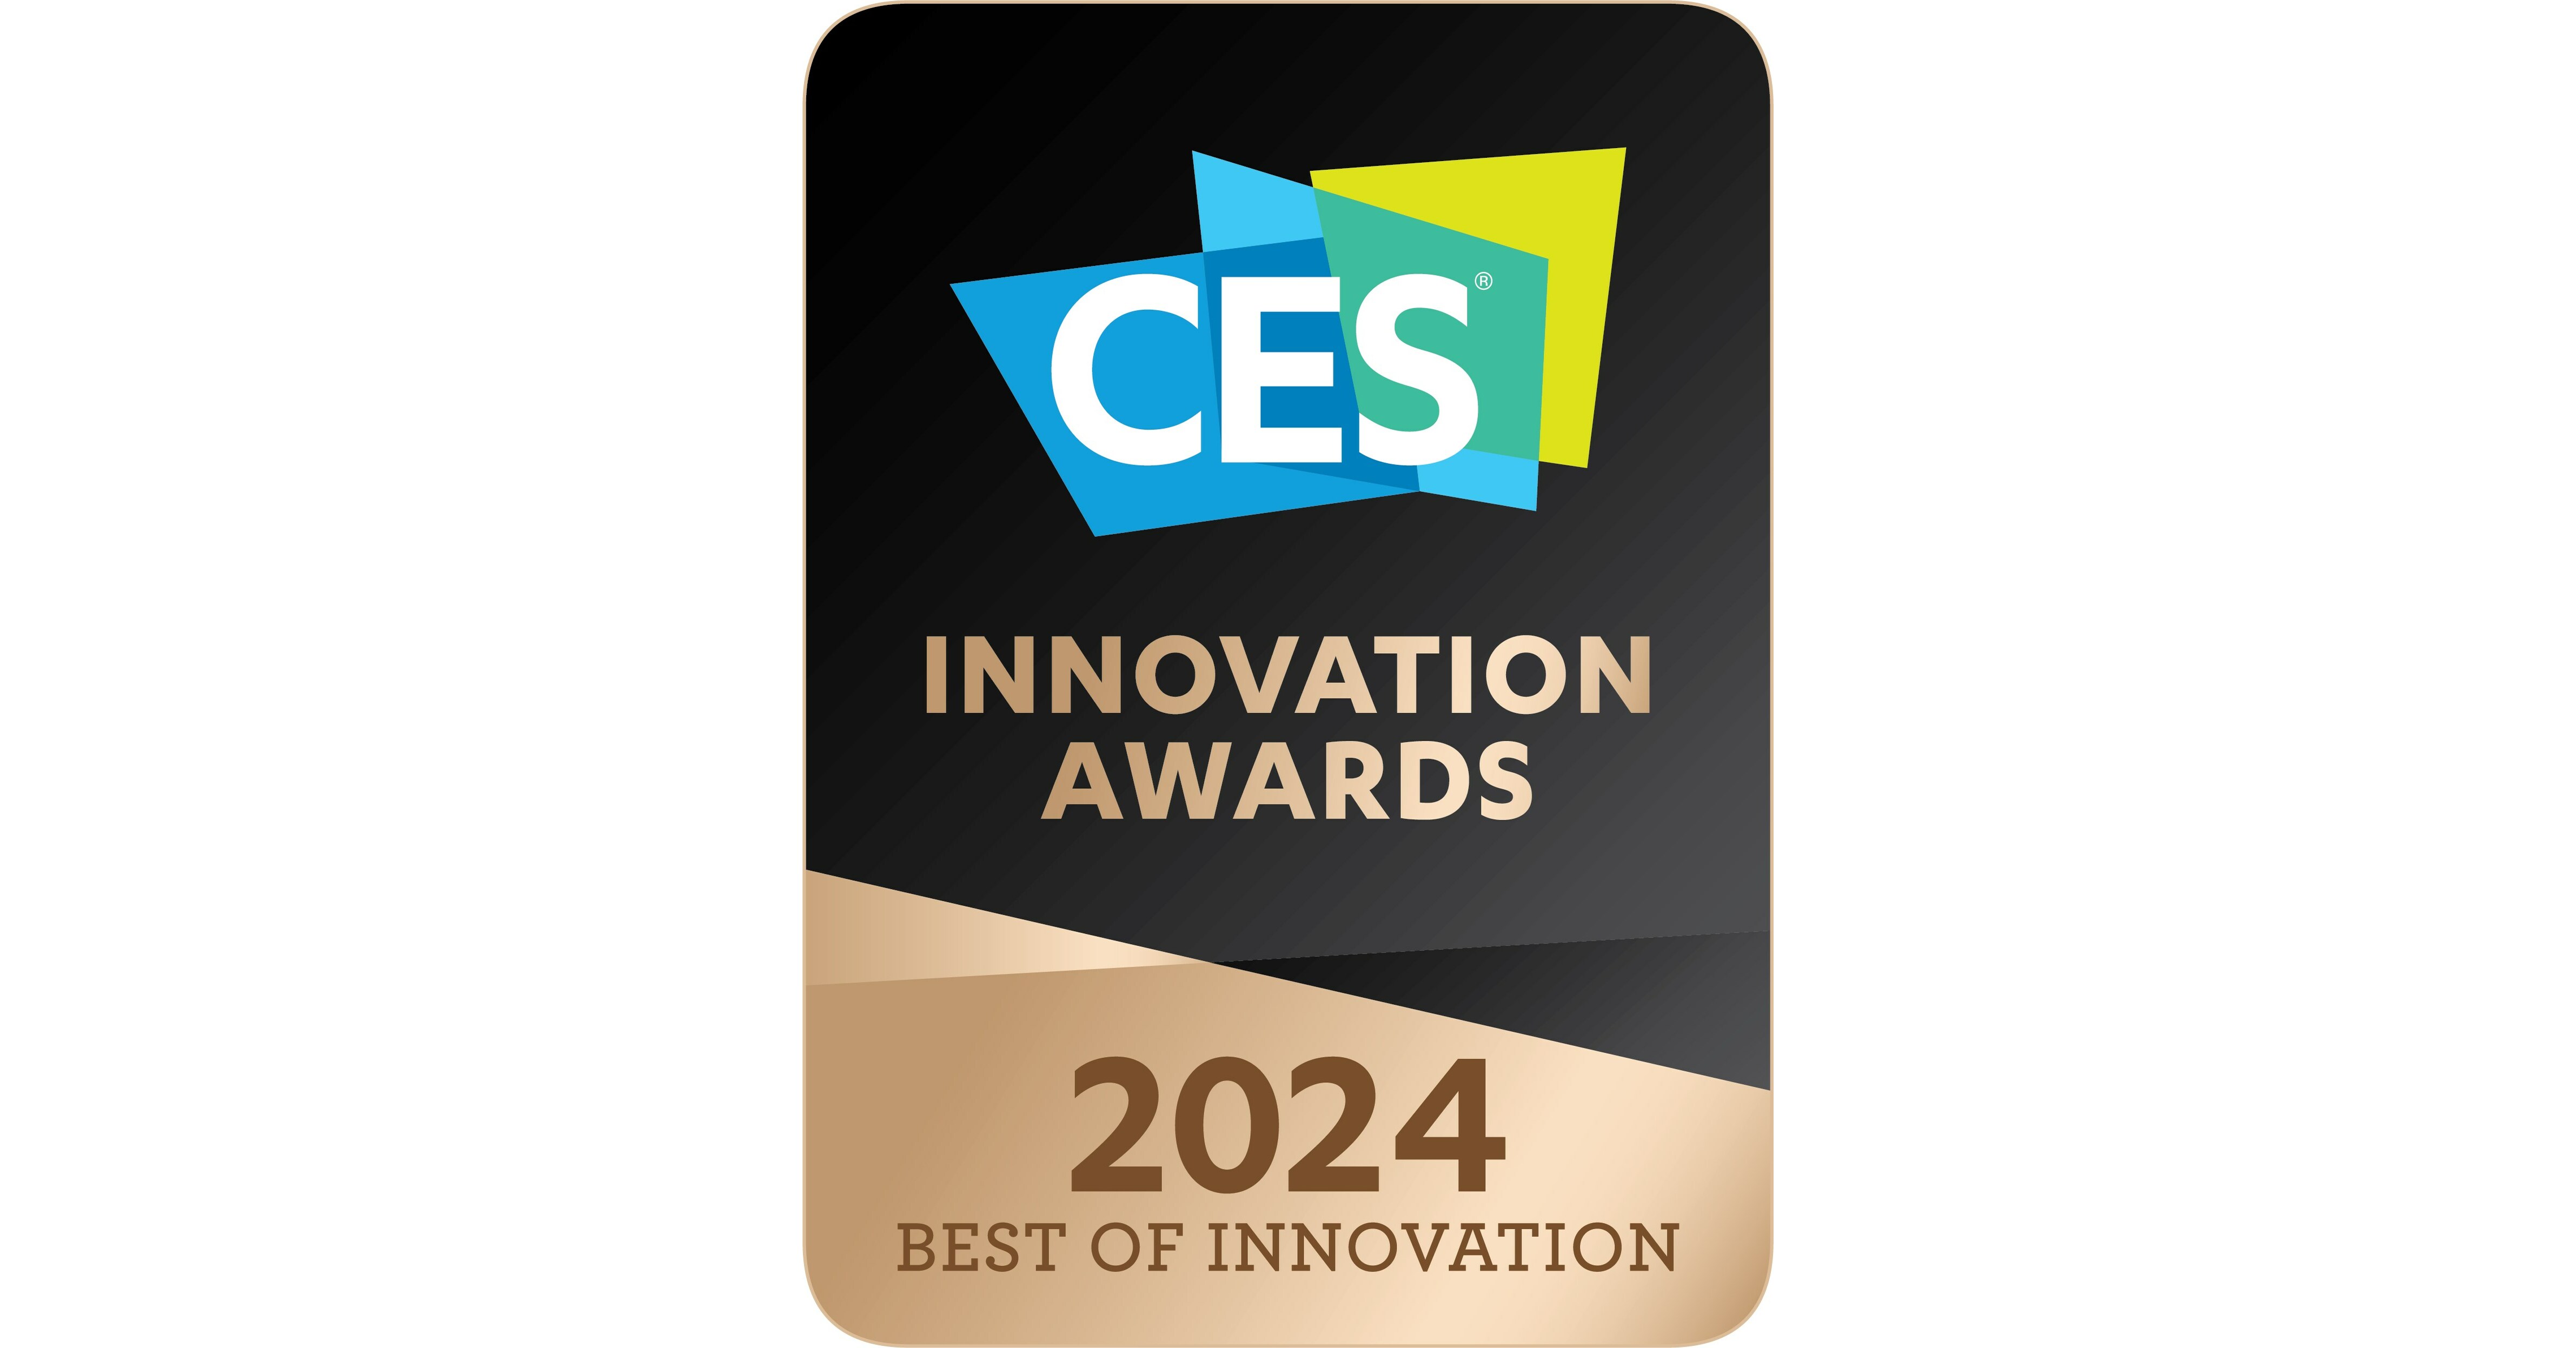 تم الاعتراف بالتزام إل جي بالابتكار بالعديد من الجوائز في معرض CES 2024